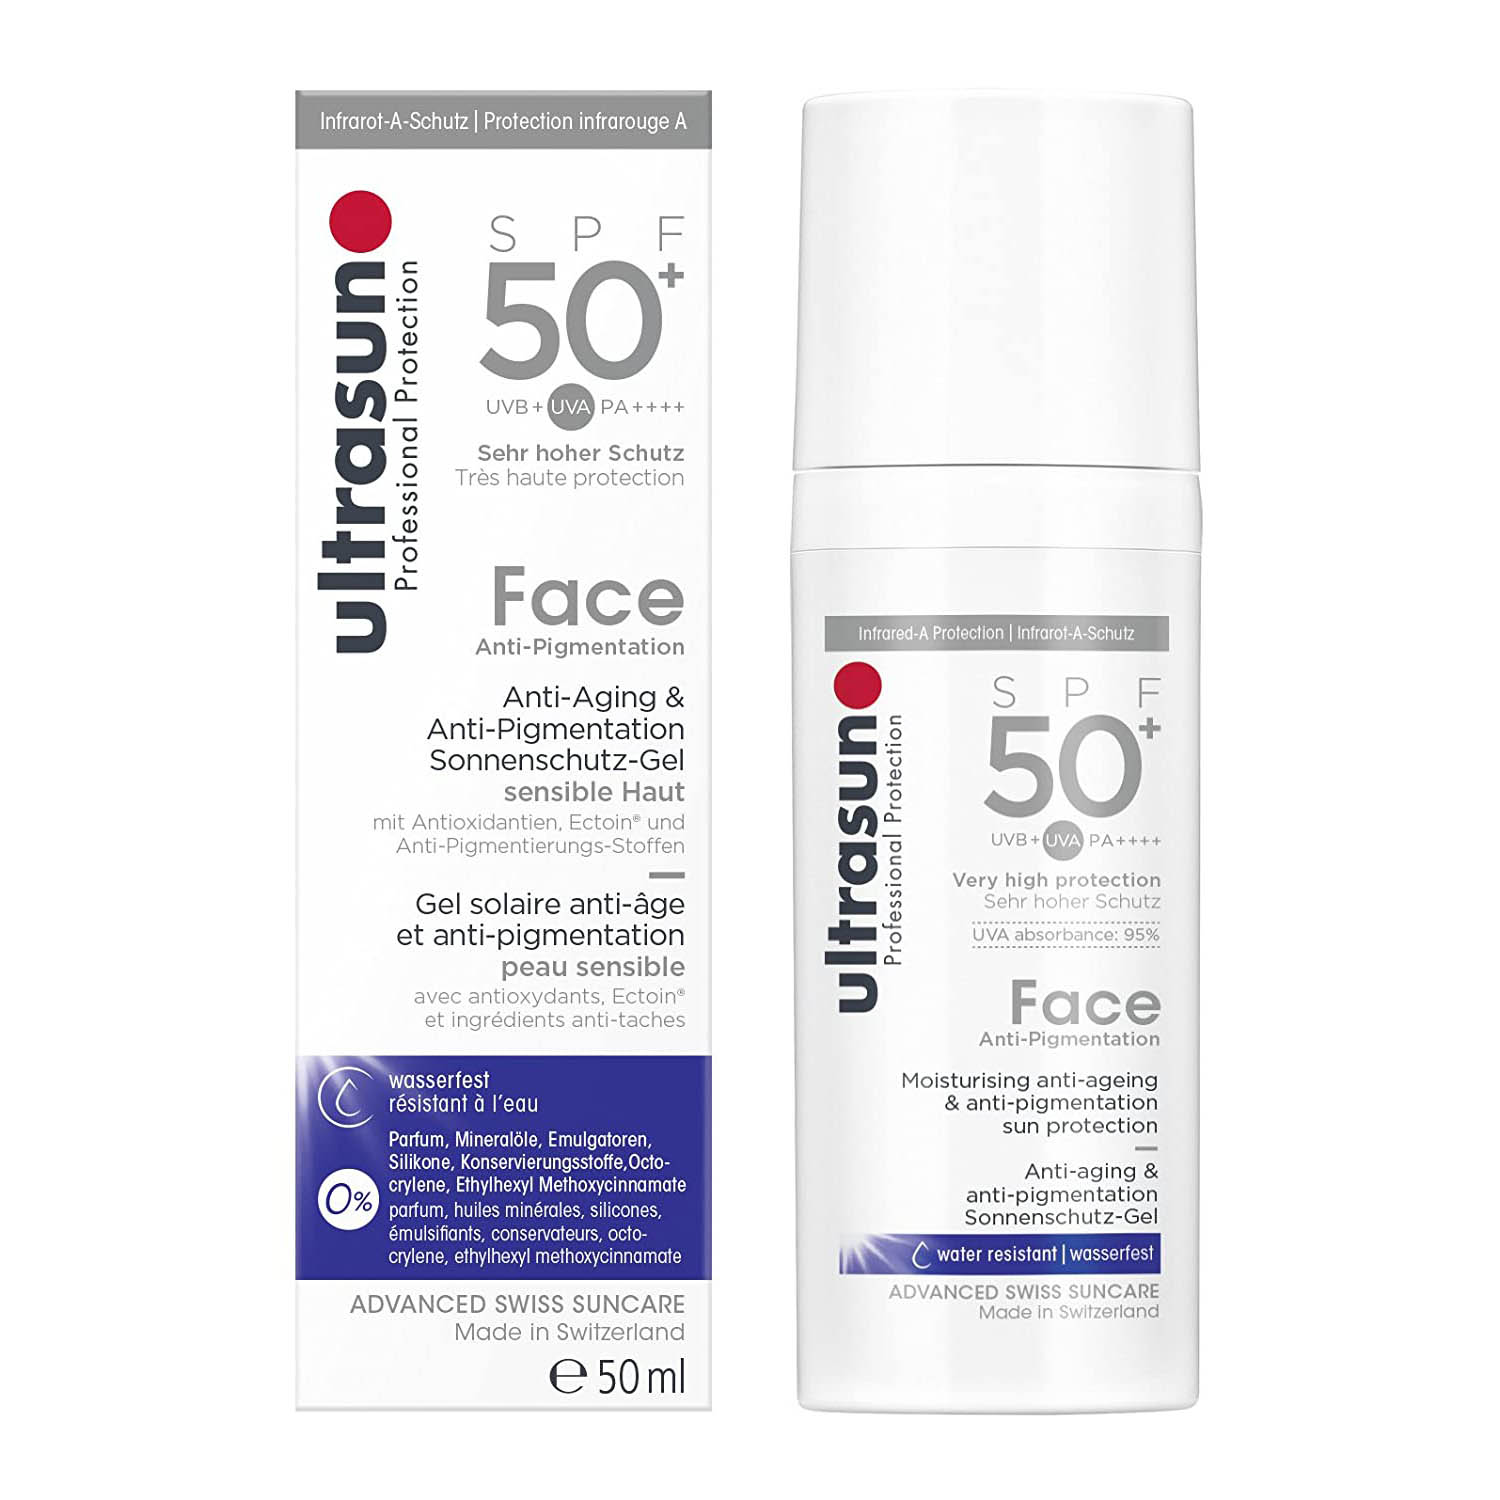 ULTRASUN Anti Pigmentation Face SPF 50 plus kaufen bestellen Preisvergleich Rabattcode Erfahrungen